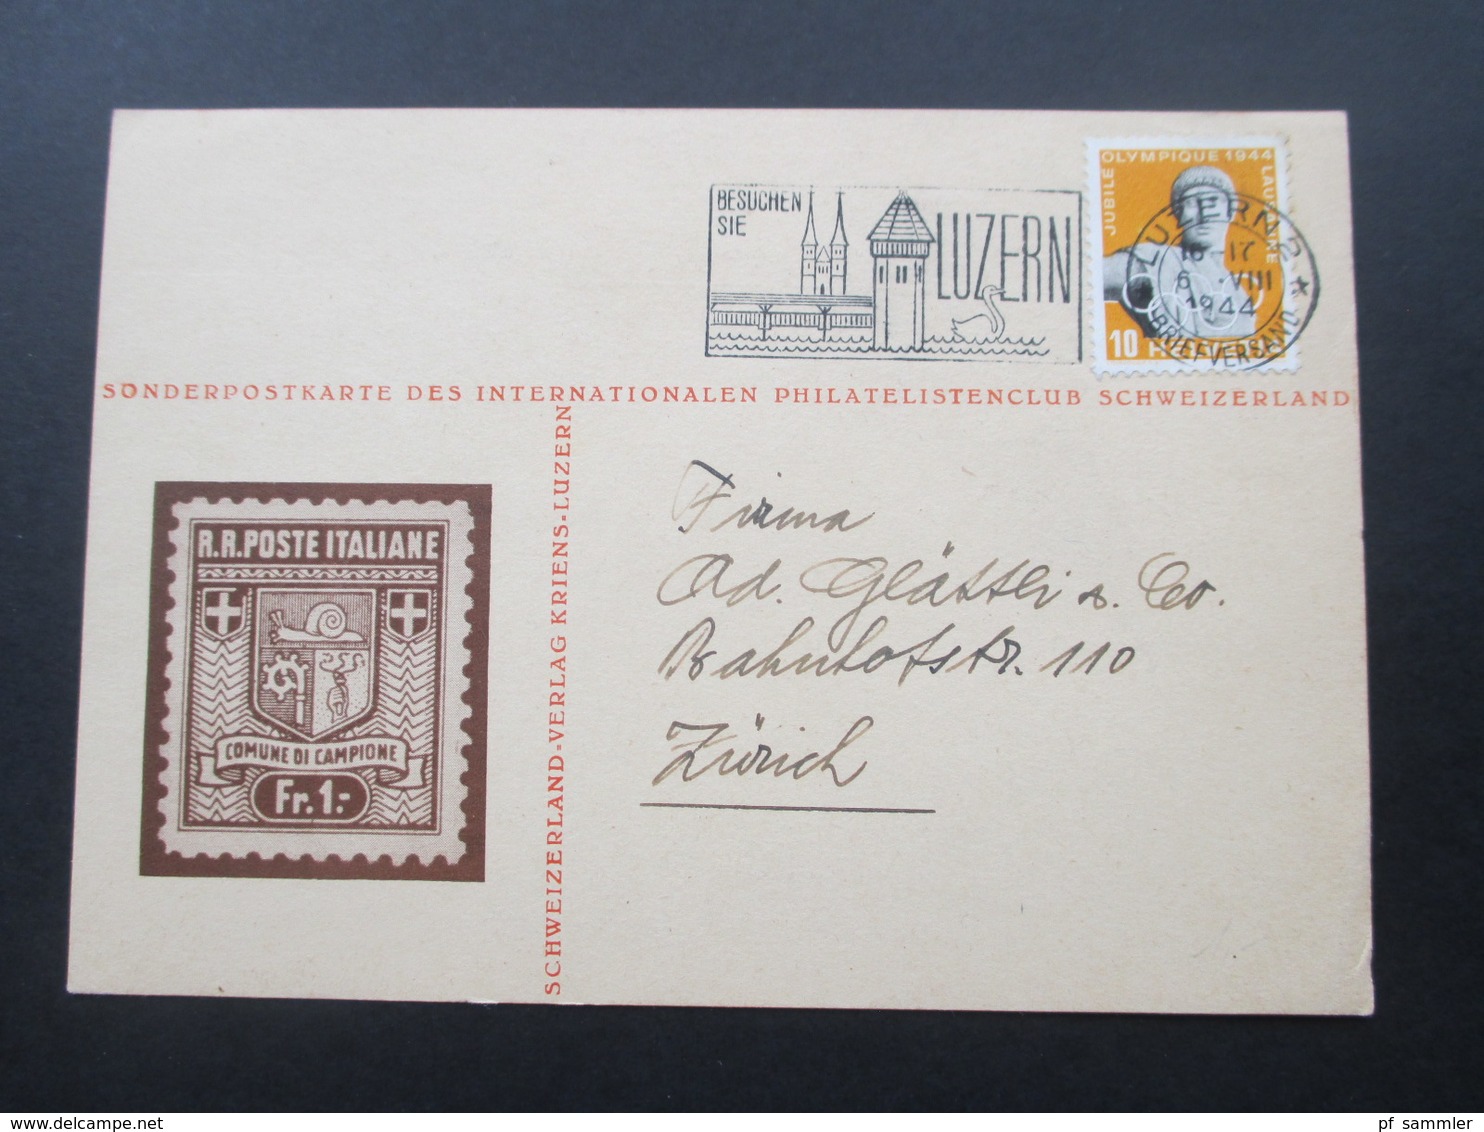 Schweiz 1944 Sonderpostkarte Des Internationalen Philatelistenclub Schweizerland. Schweizerland Verlag Kriens - Covers & Documents